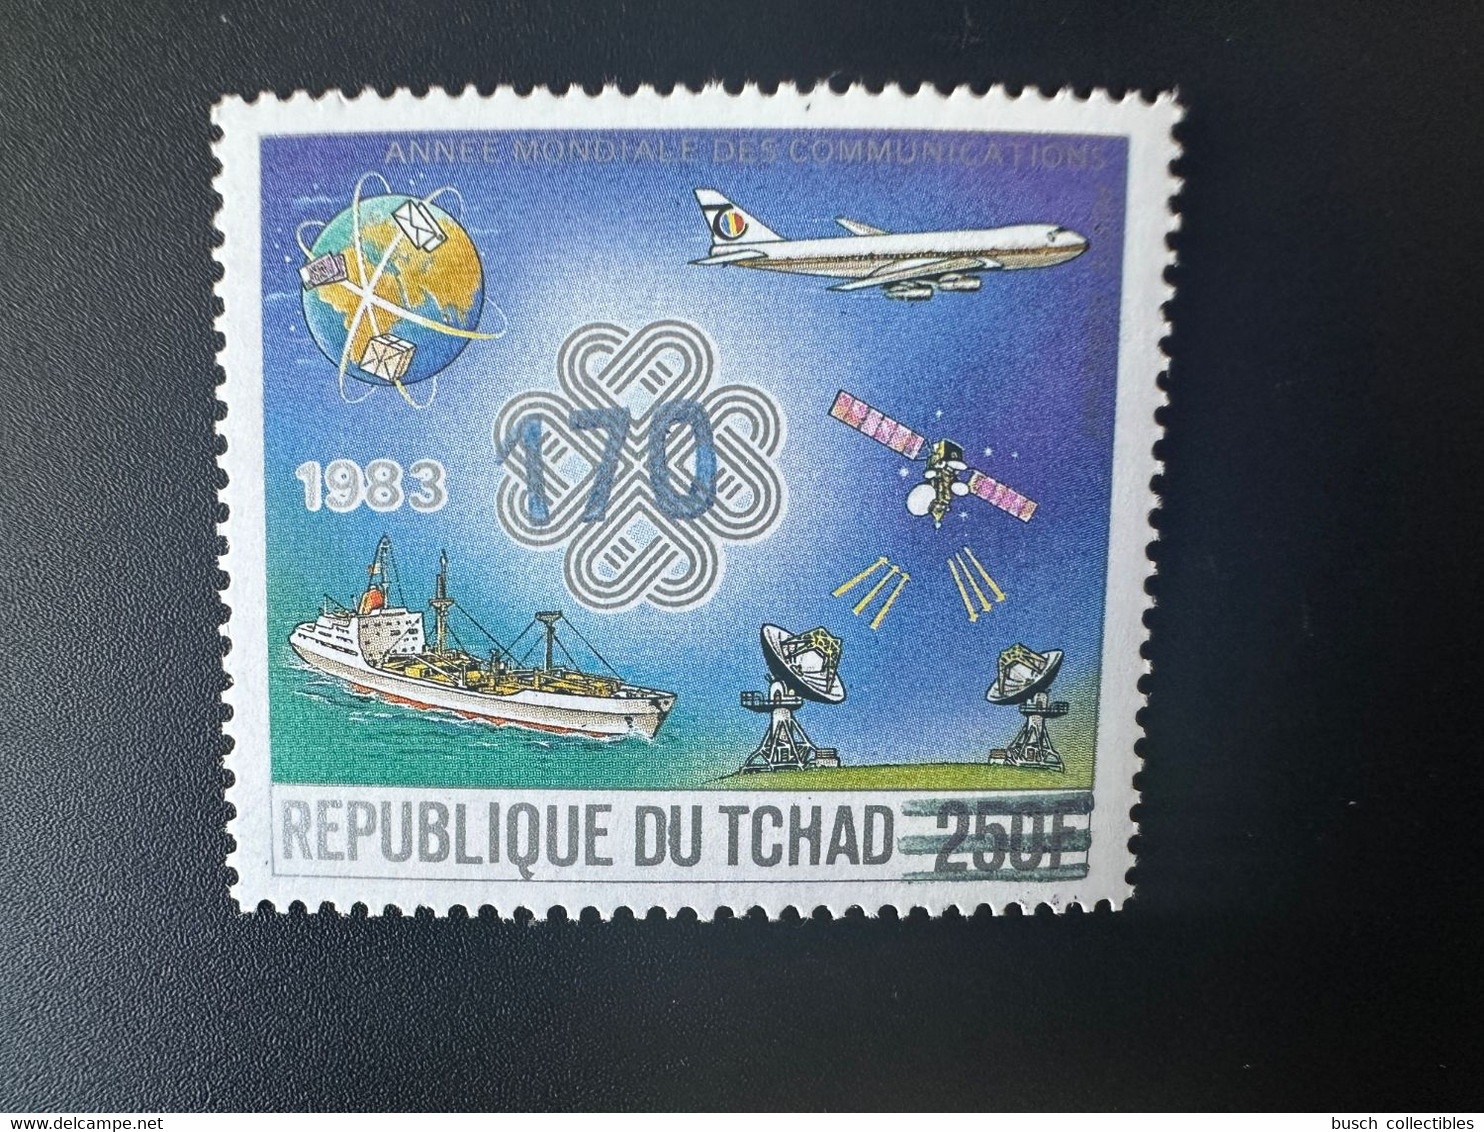 Tchad Chad Tschad 1987 / 1988 Mi. 1147 Surchargé Overprint Année Mondiale Des Communications Avion Airplane Flugzeug - Chad (1960-...)